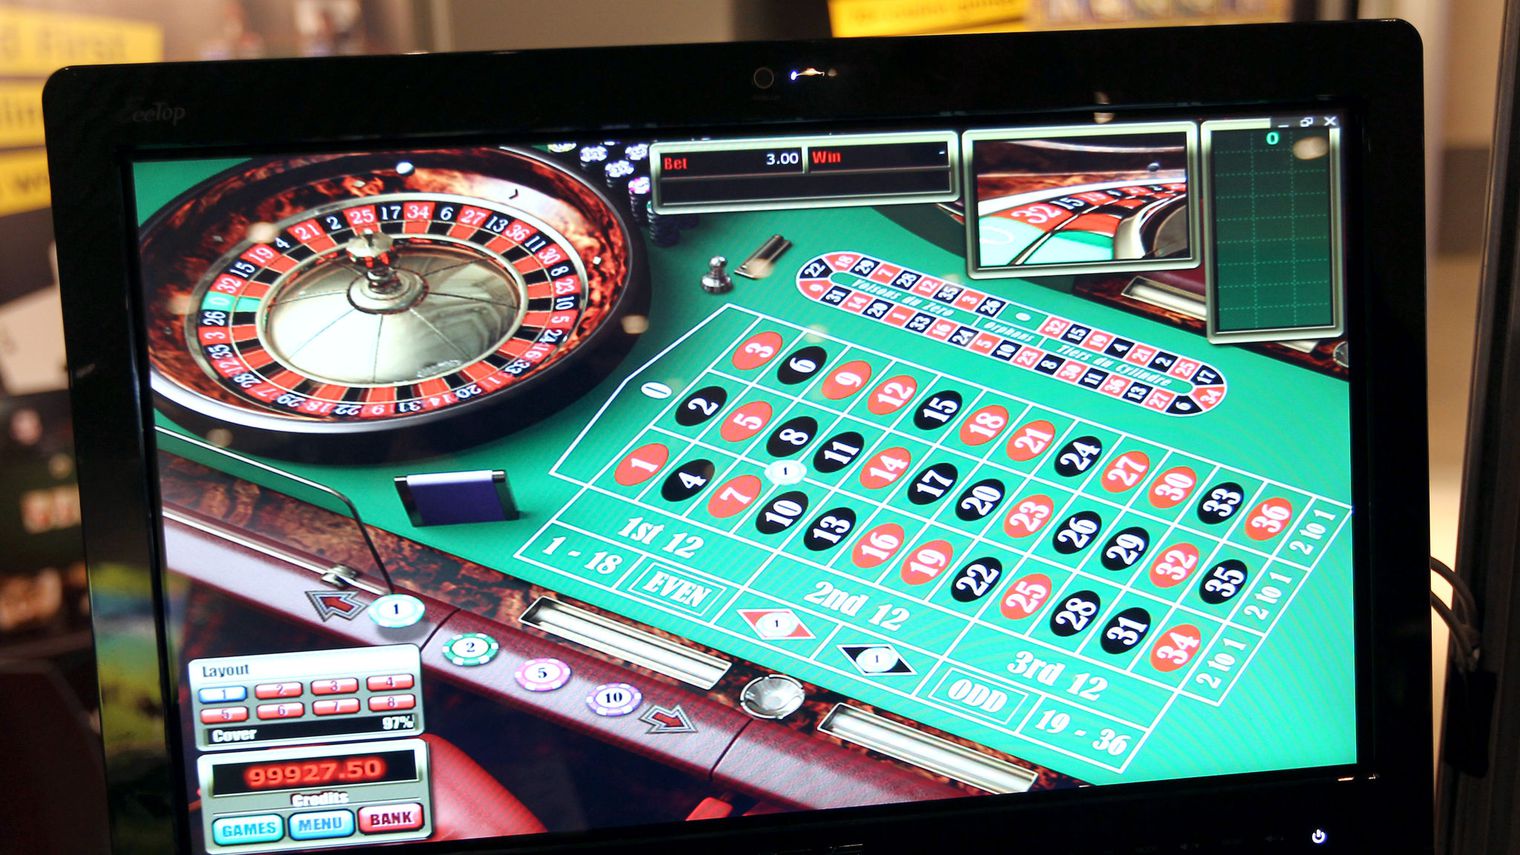 Jeux casino : se spécialiser dans un jeu